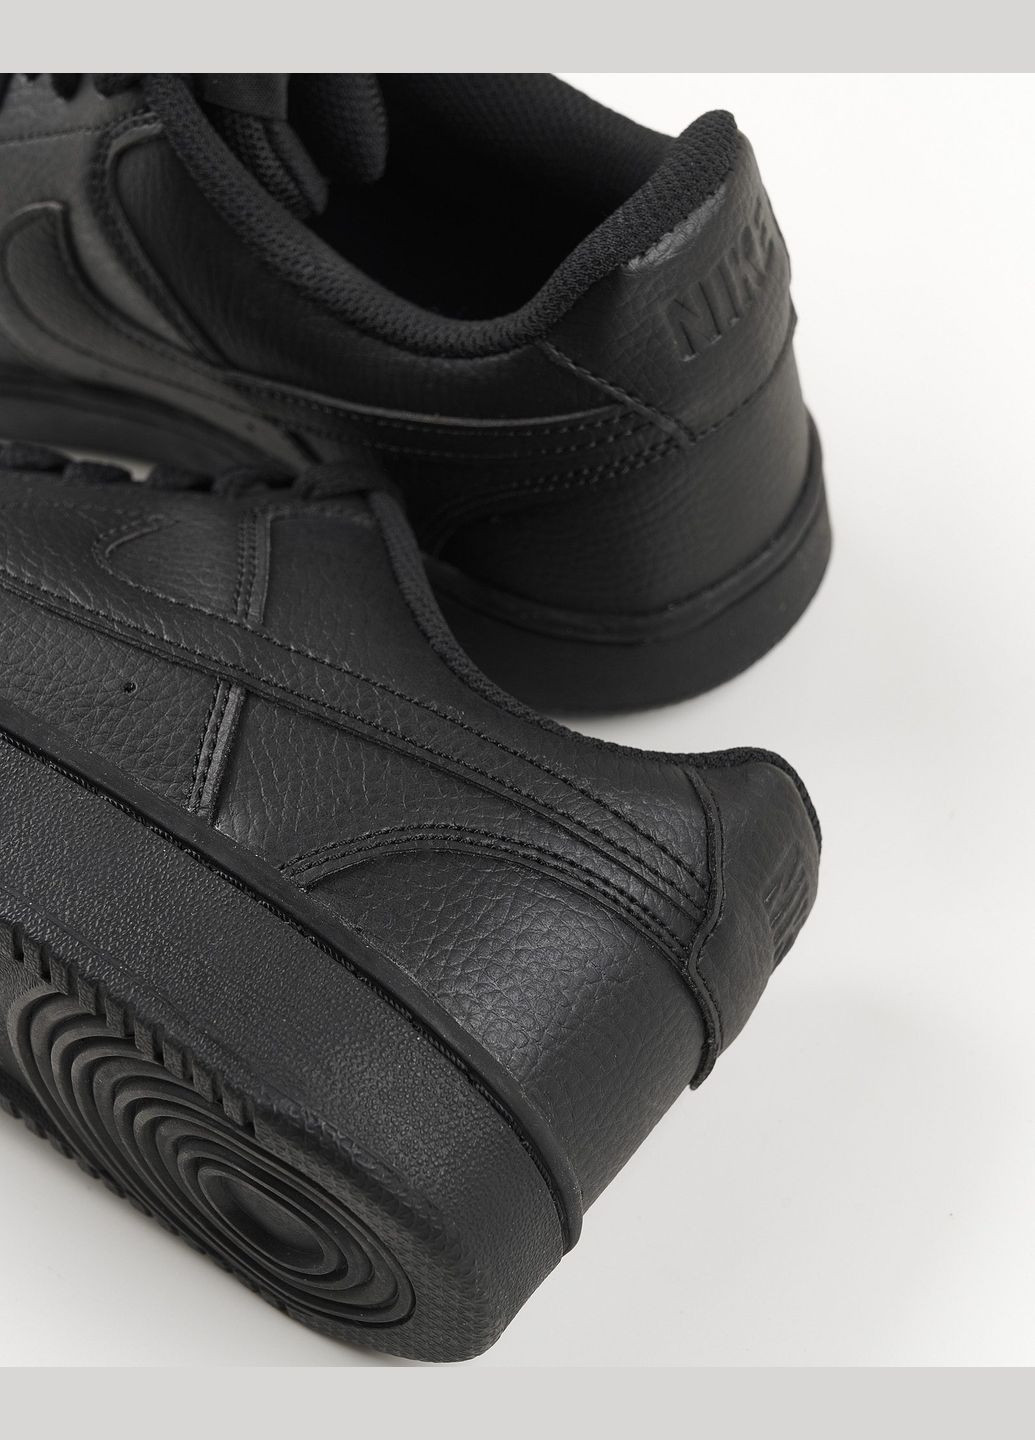 Черные всесезонные кроссовки мужские оригинал кроссовки мужские court vision low next nature dh2987-002 весна-осень кожа черные Nike